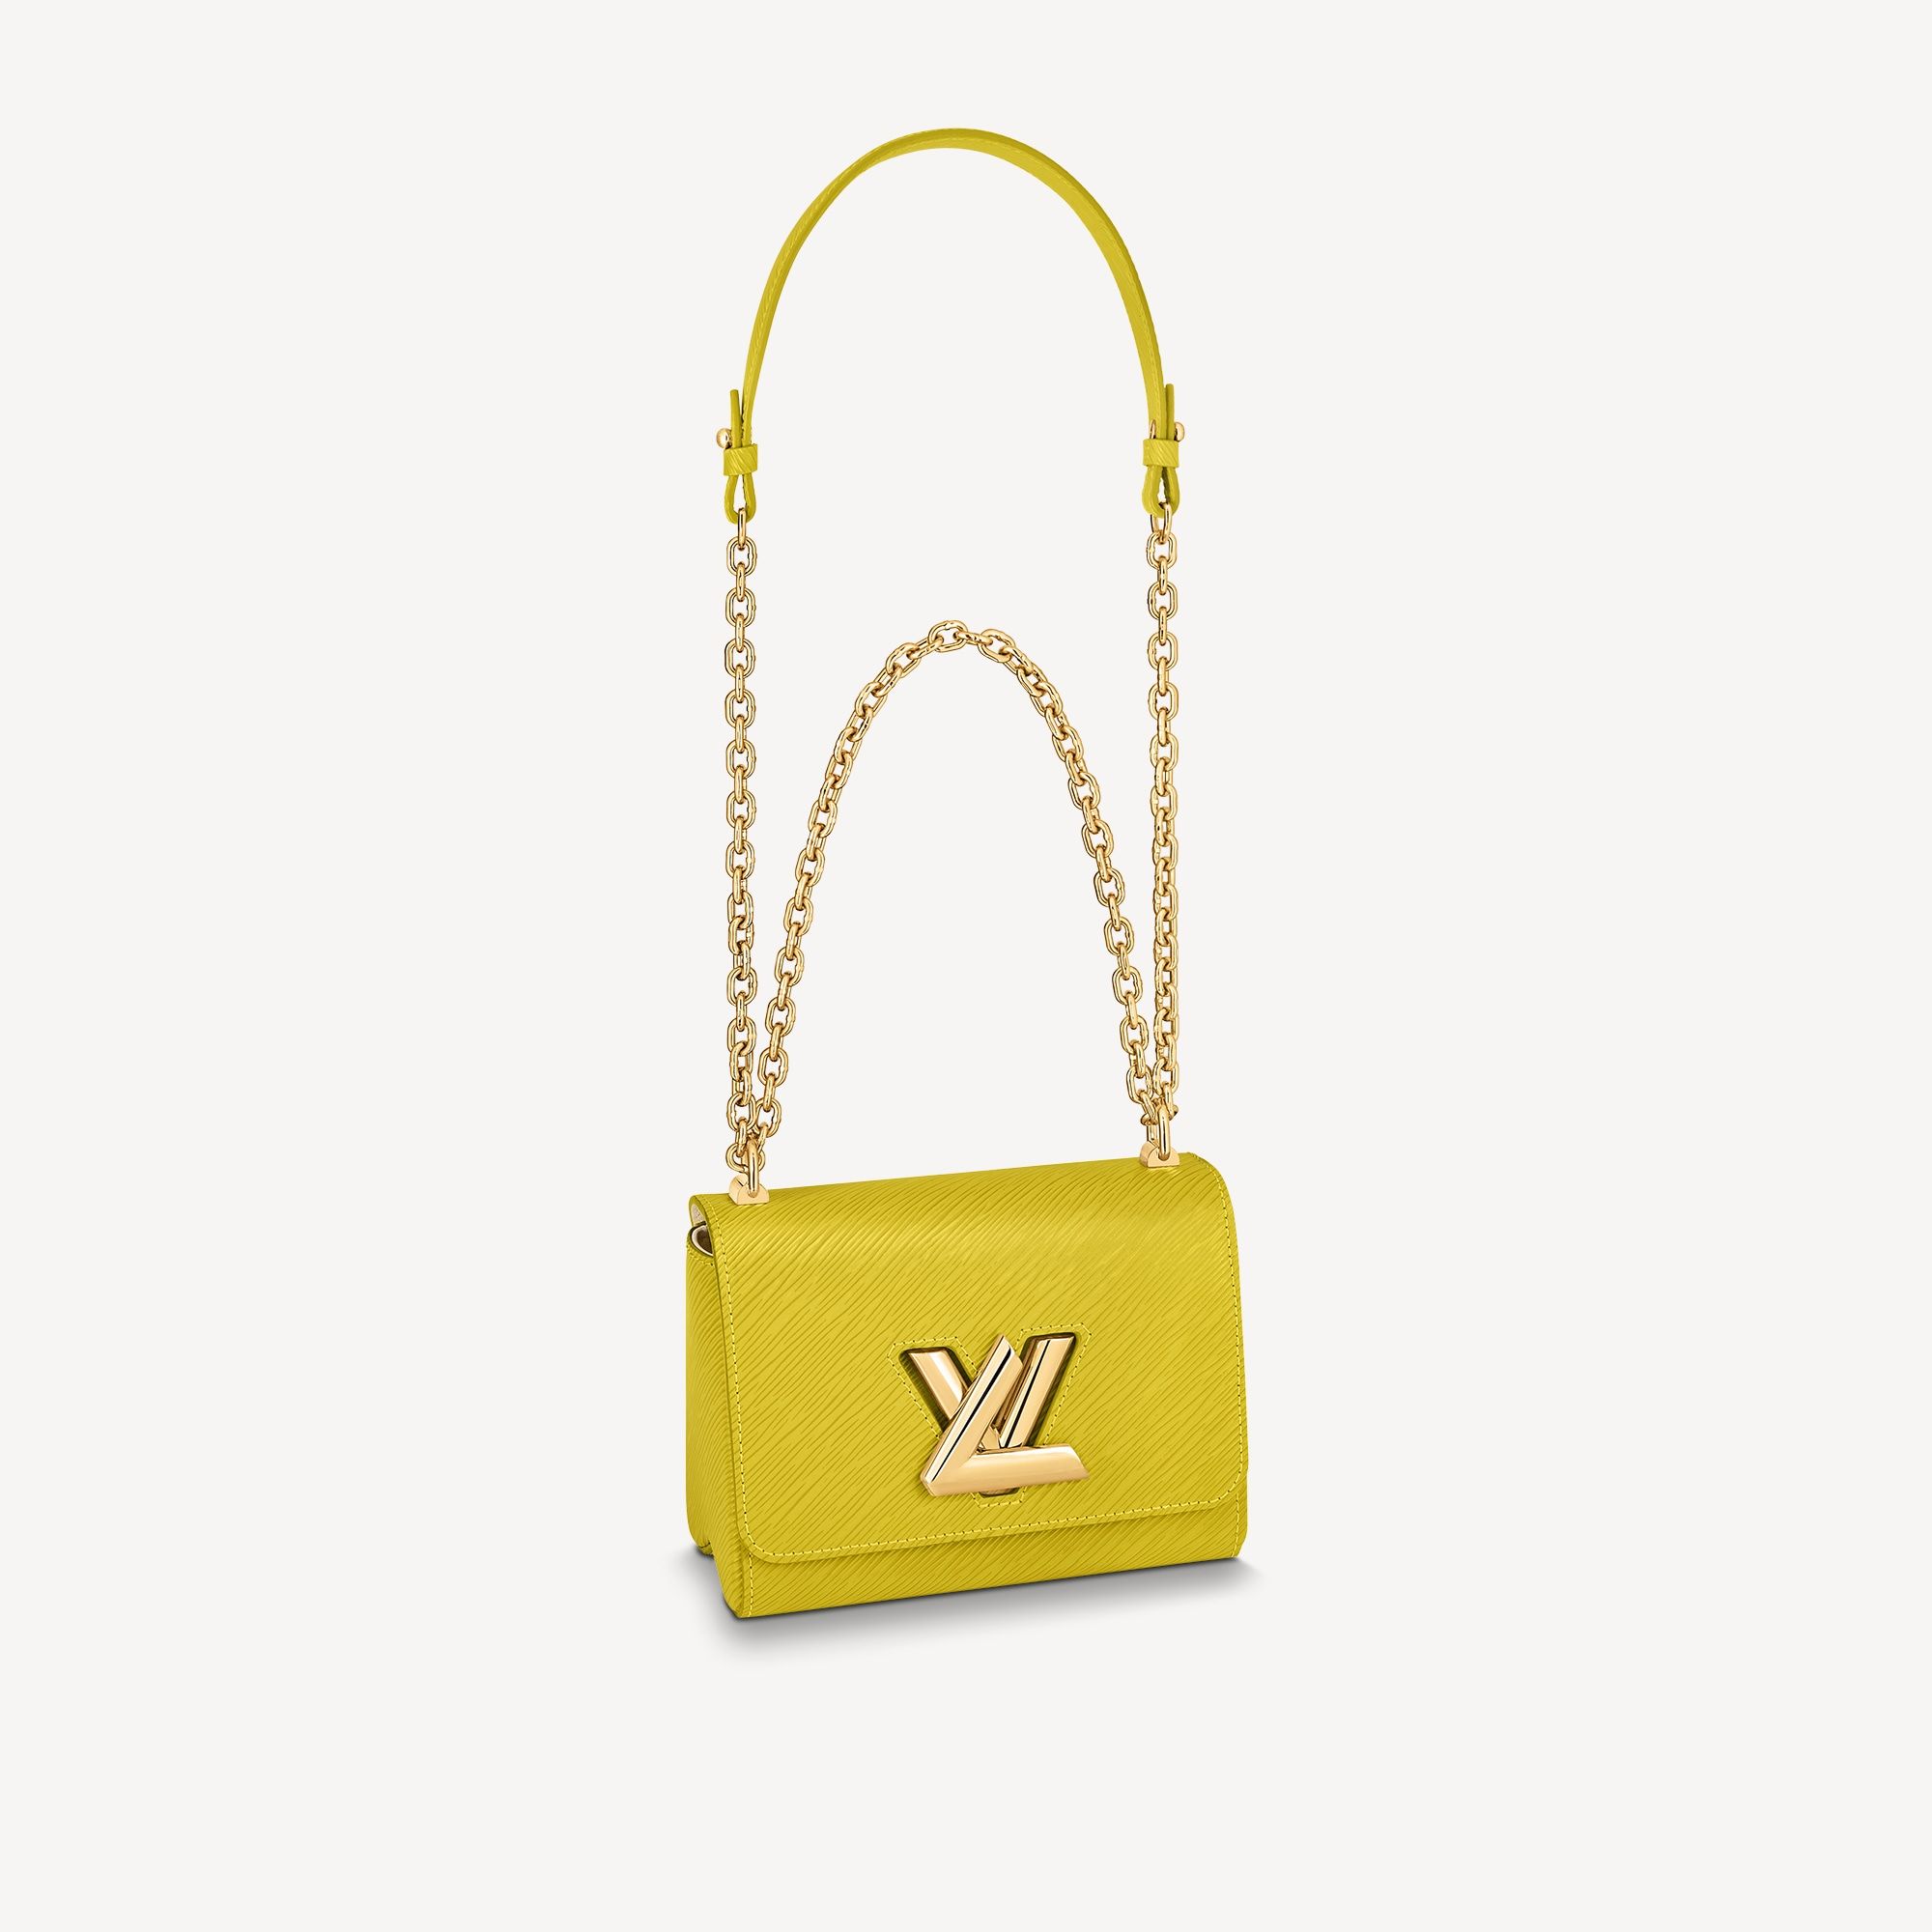 LOUIS VUITTON Epi Twist Sequin Bird Gold Buckle Chain Shoulder Bag Bla –  Brand Off Hong Kong Online Store